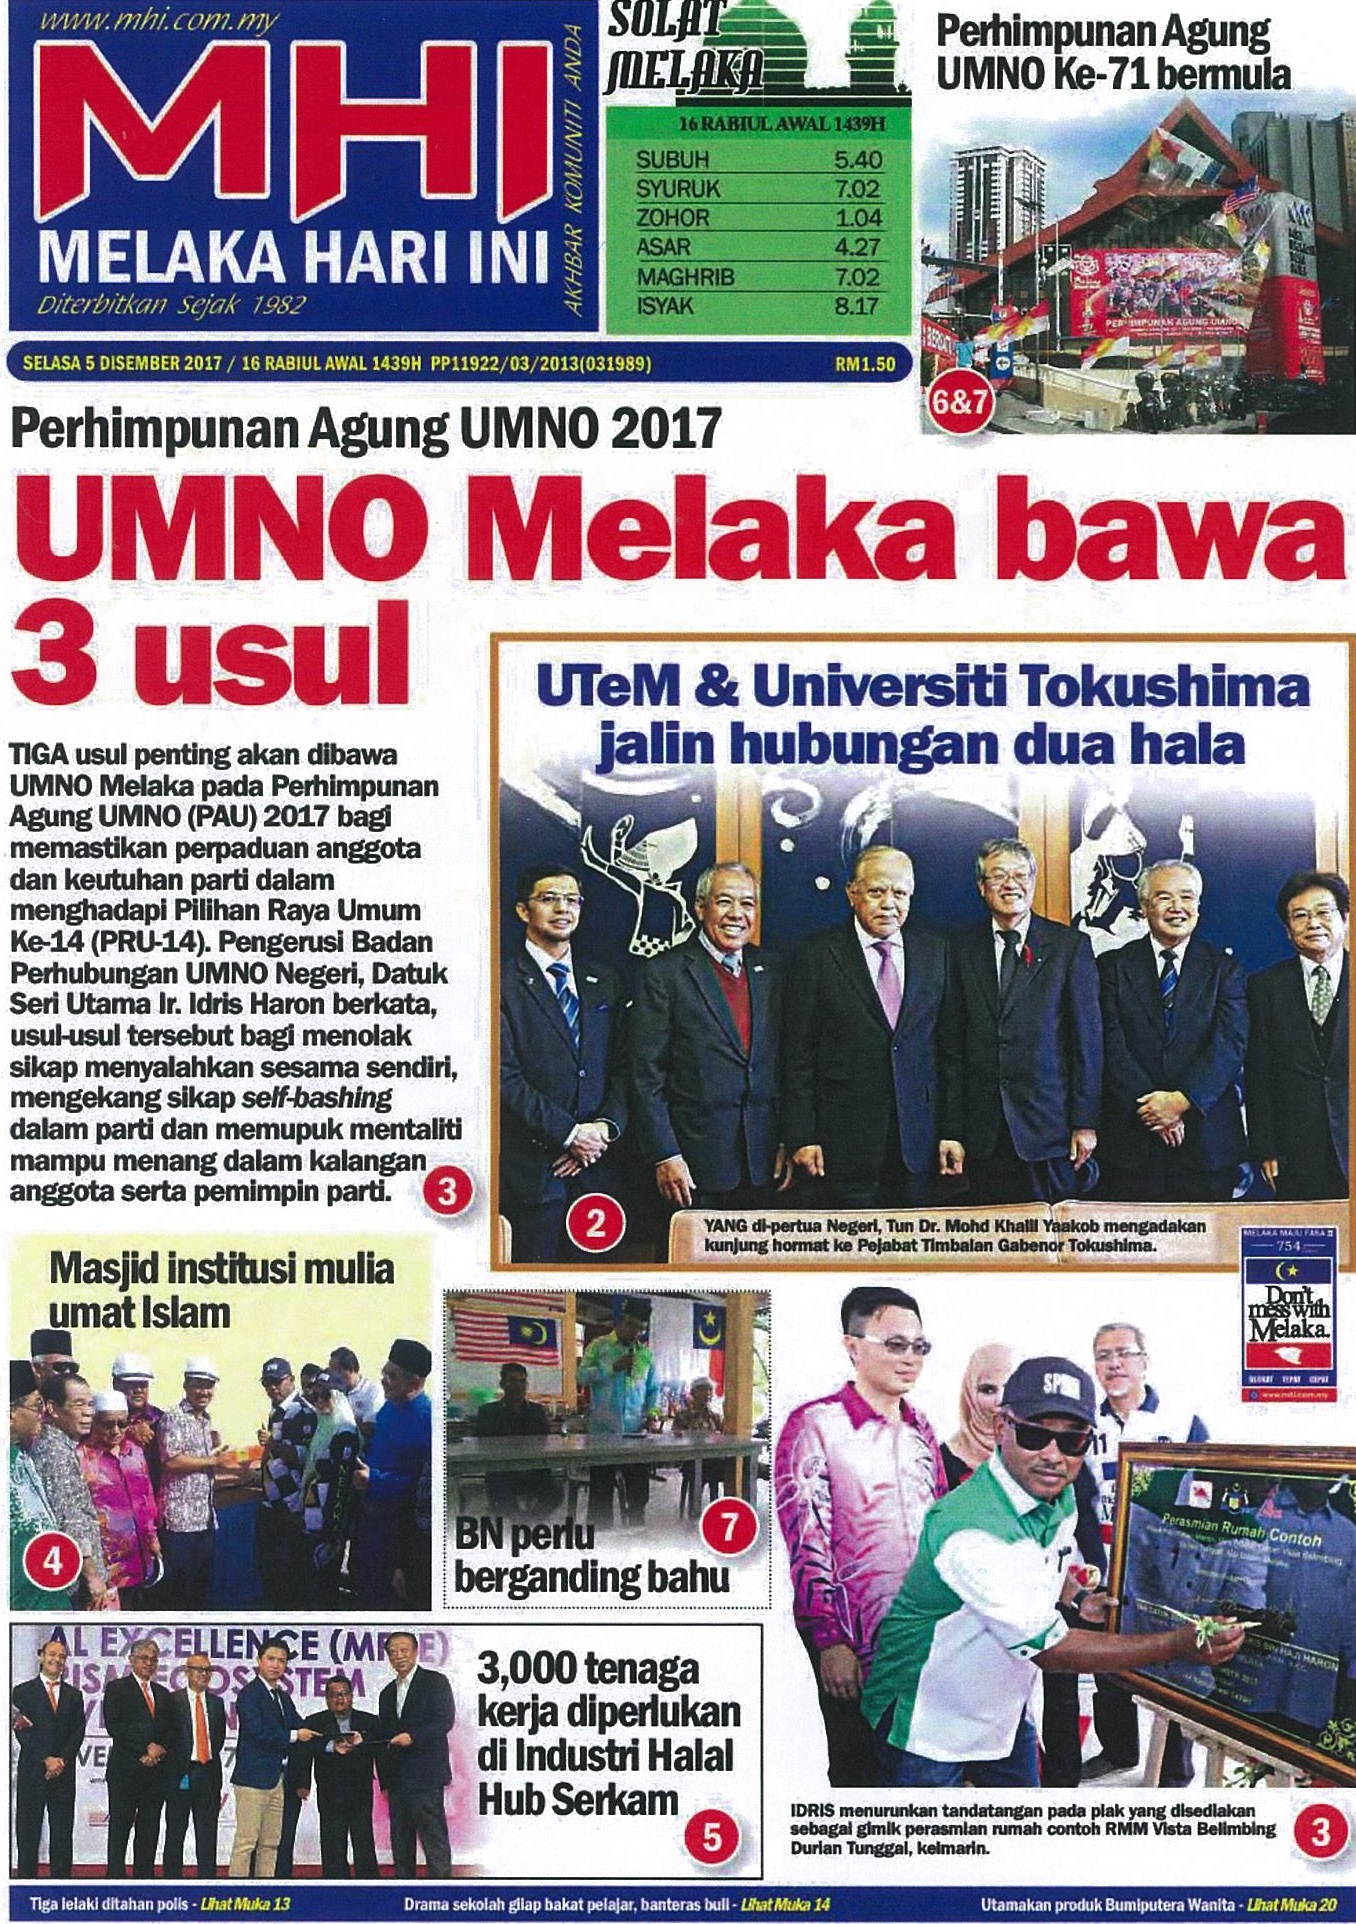 UTeM & Universiti Tolkushima jalin hubungan dua hala (Halaman depan akhbar)